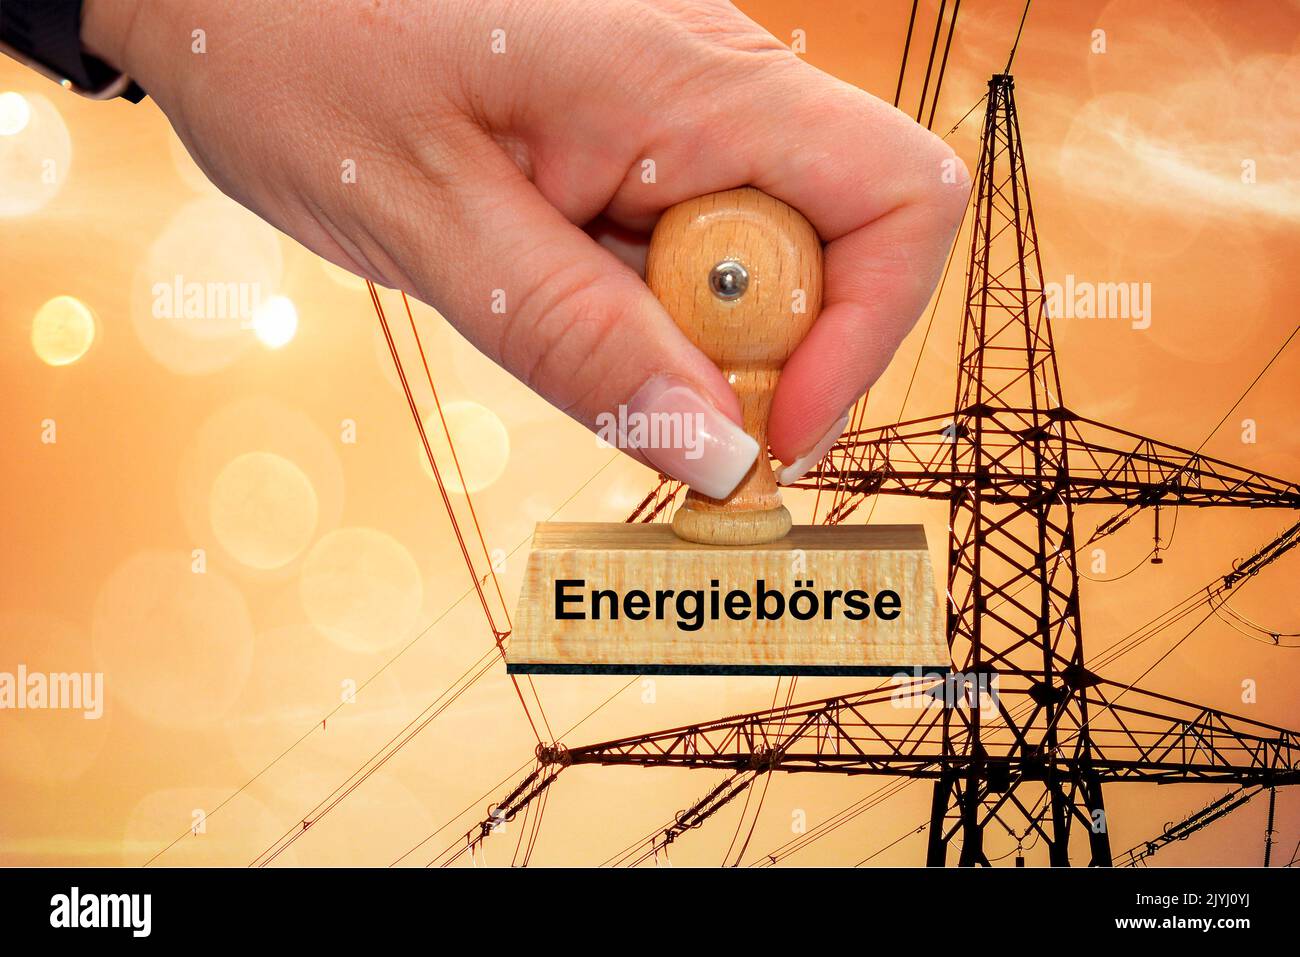 Main de femme avec cachet Energieboerse, bourse d'énergie, pôle de puissance en arrière-plan, Allemagne Banque D'Images